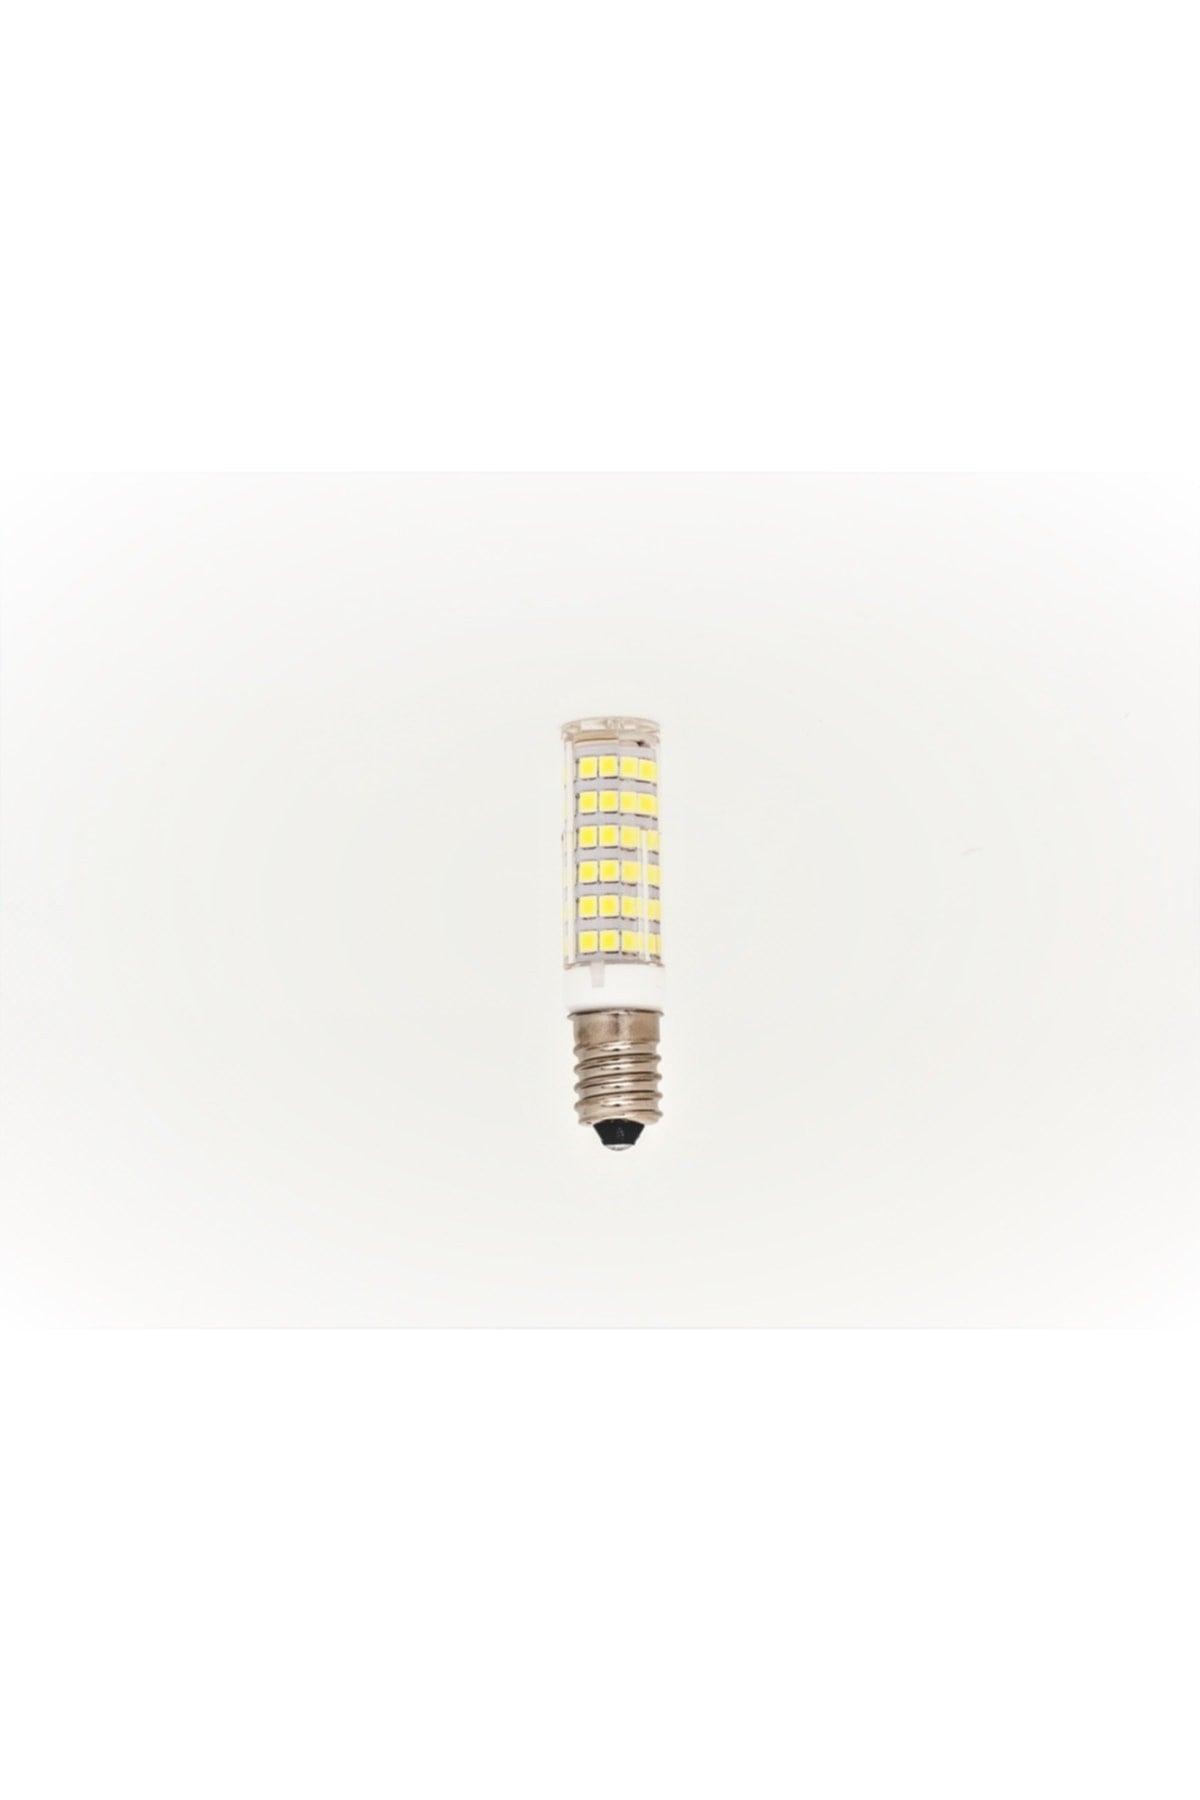 (10PCS) 220v E14 7w Capsule Led Bulb White